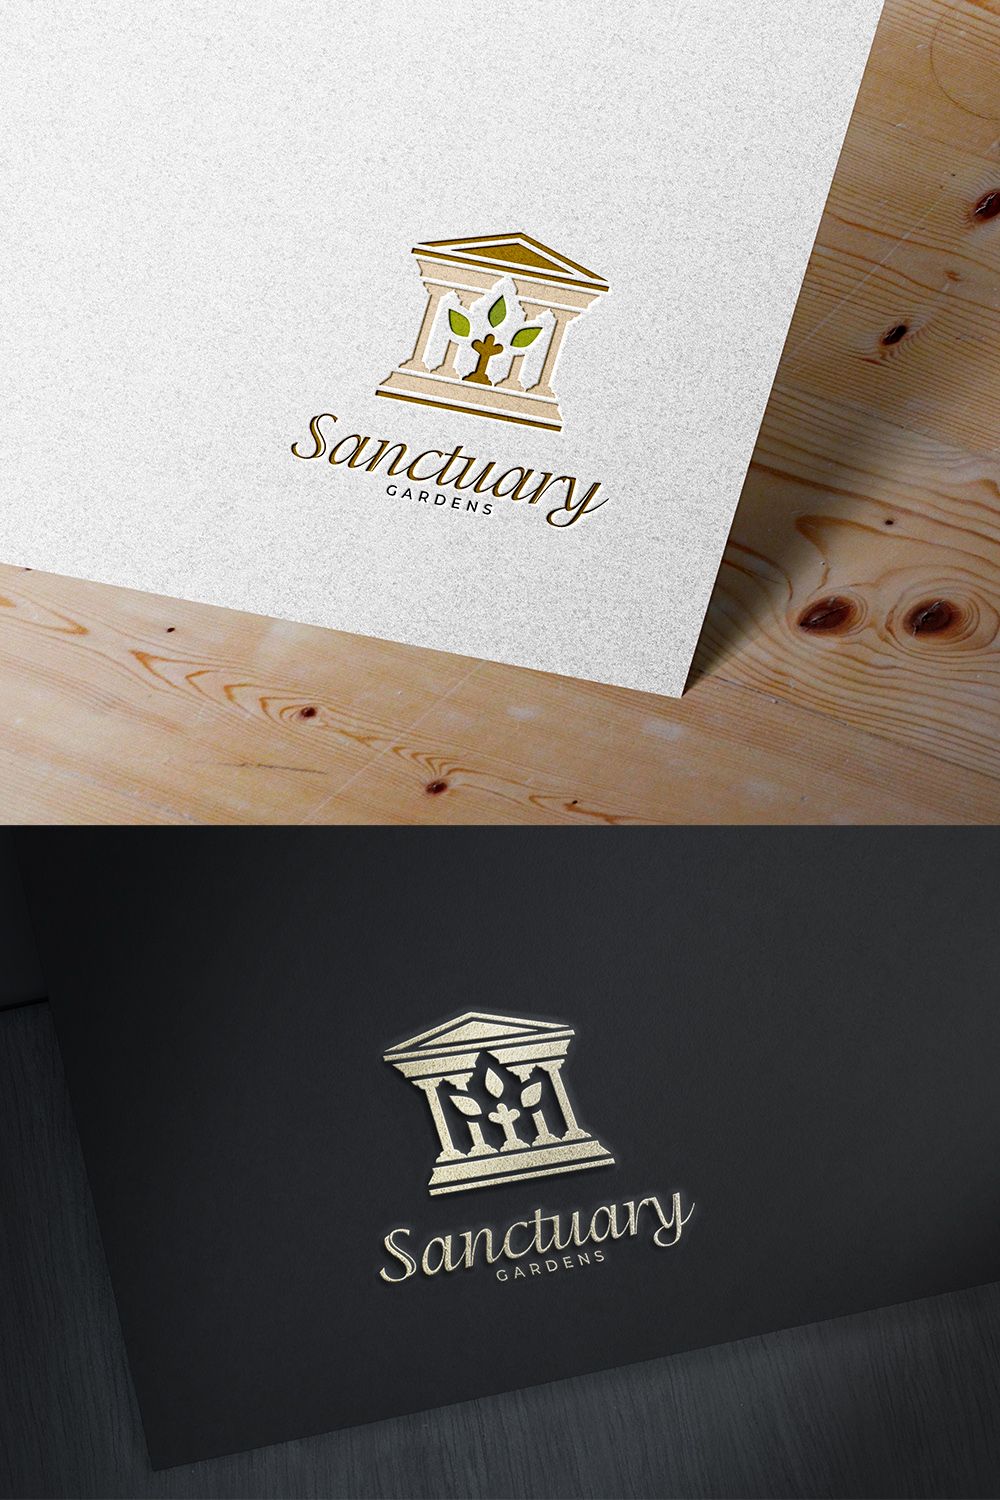 Sanctuary Gardens Third Concept - pinterest image preview.